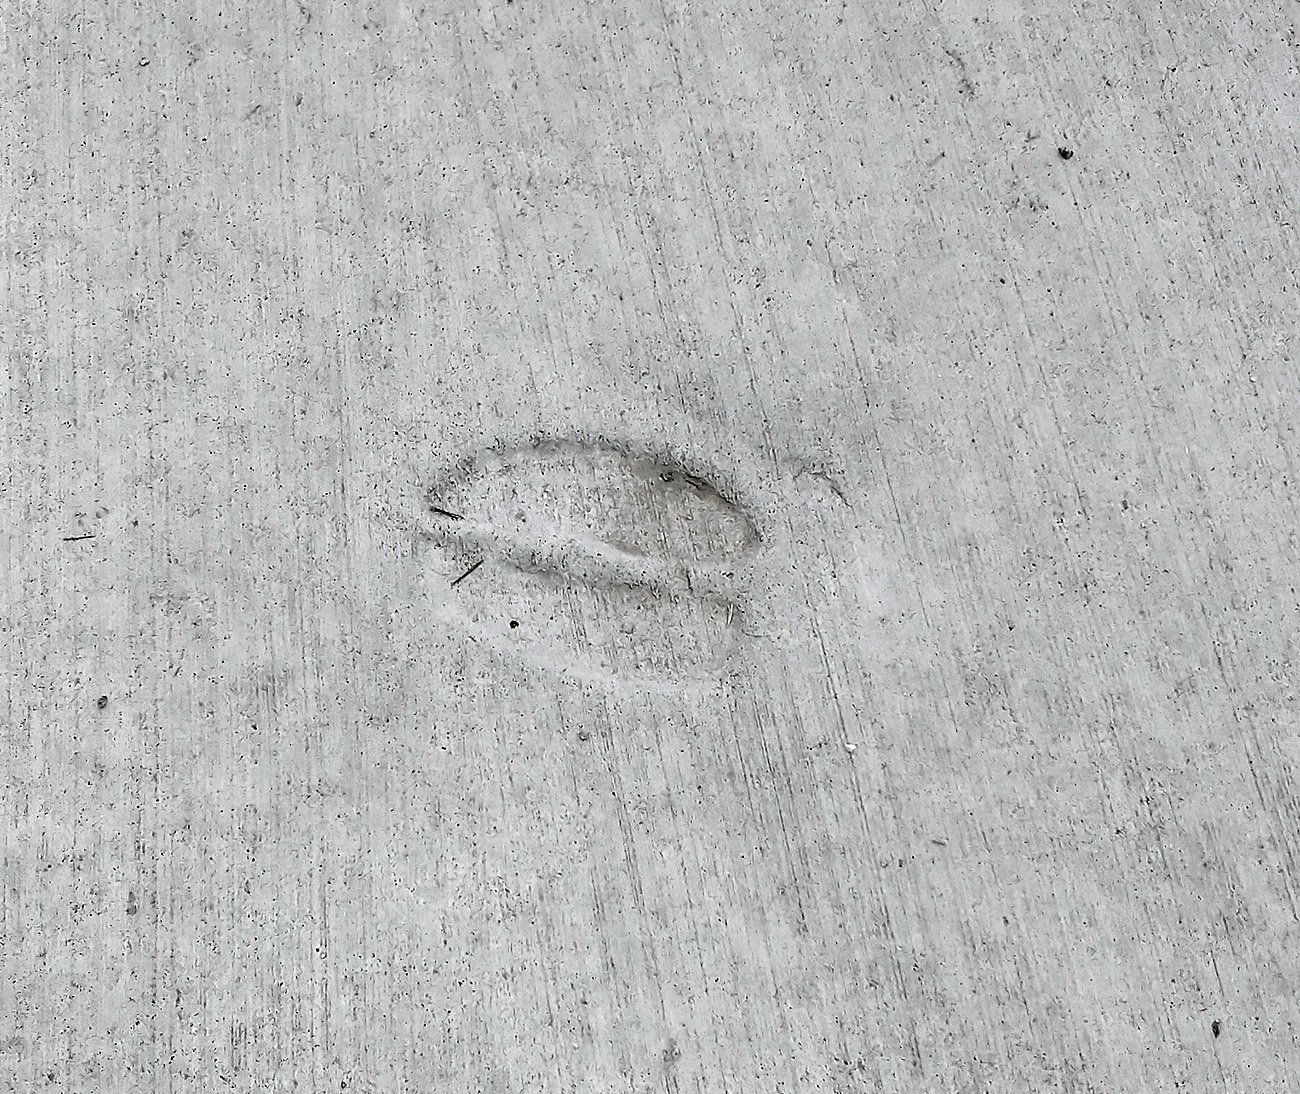 Deer vandalism in the sidewalk concrete. 